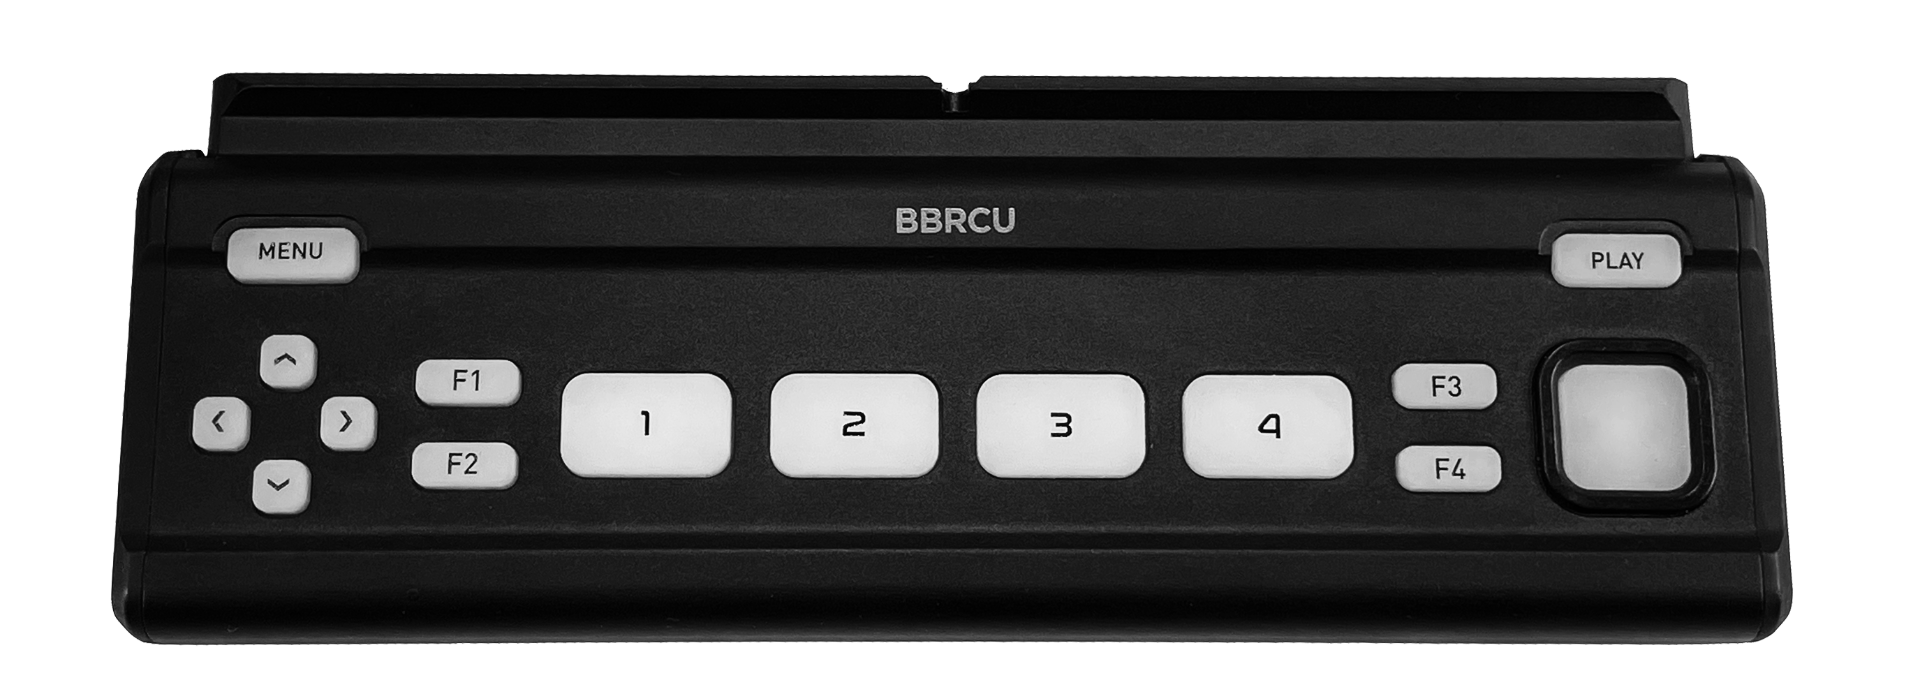 Image of Atomos Neon 17/24 Buttom Bar Remote Control Unit